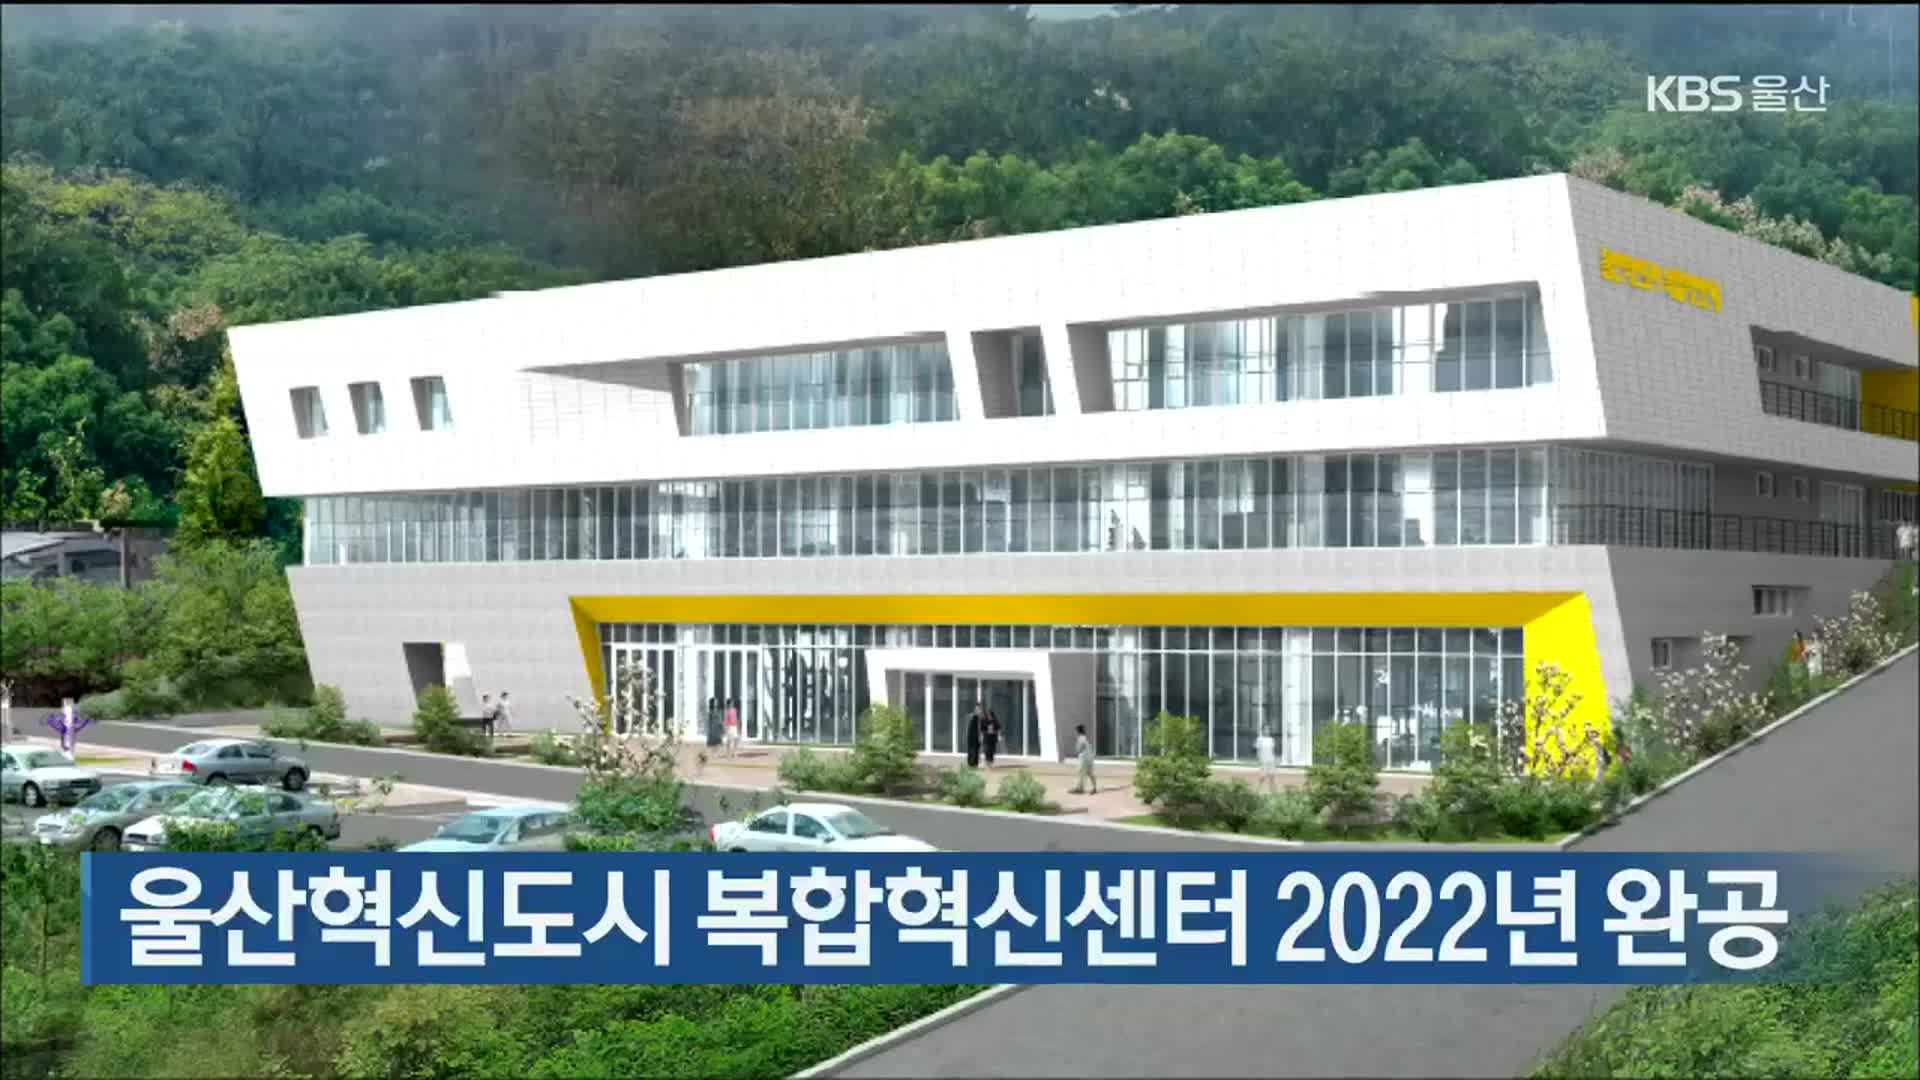 울산혁신도시 복합혁신센터 2022년 완공